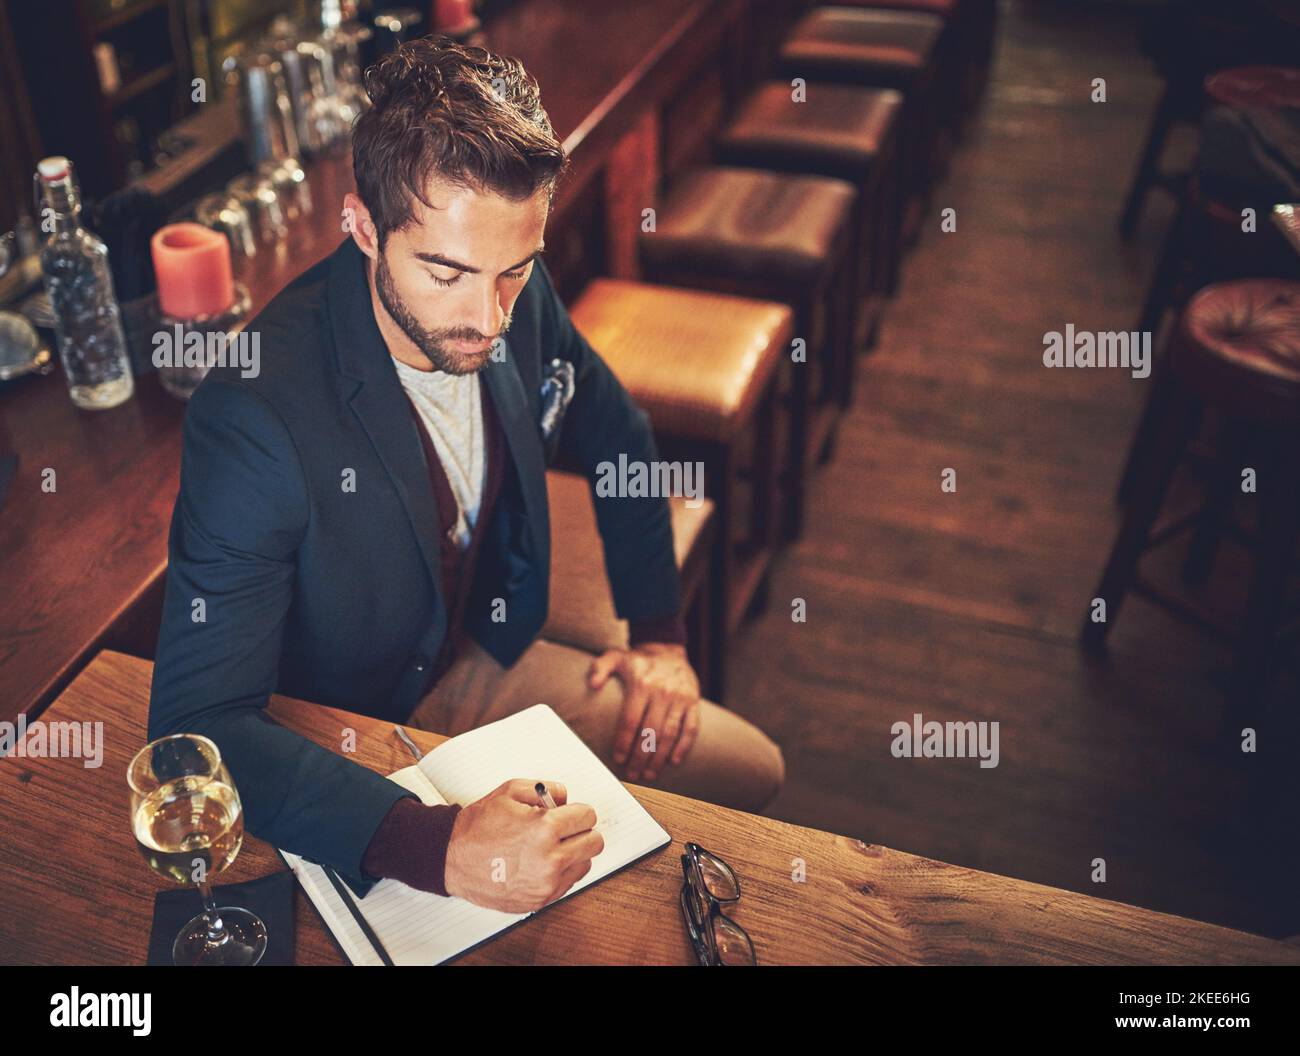 Einige Ideen niederzudrücken. Aufnahme eines jungen Mannes, der mit seinem Tagebuch in einer Bar sitzt. Stockfoto